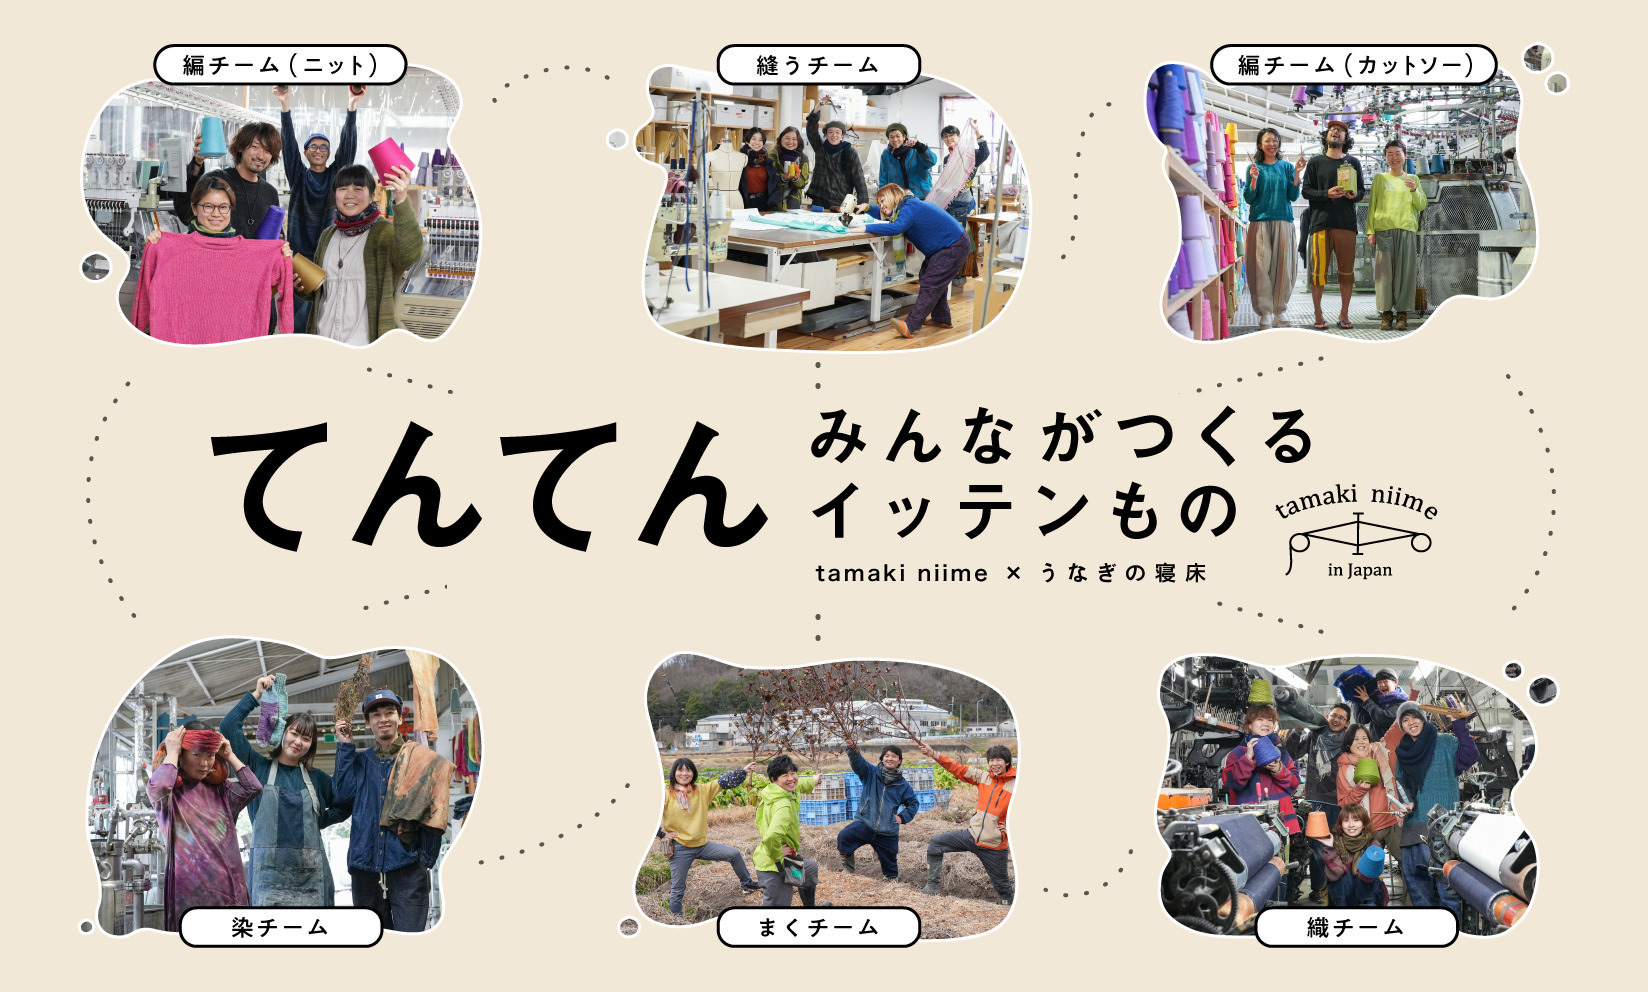 【企画展】 tamaki niime 「てんてん」 2/9〜 ららぽーと福岡にて開催！